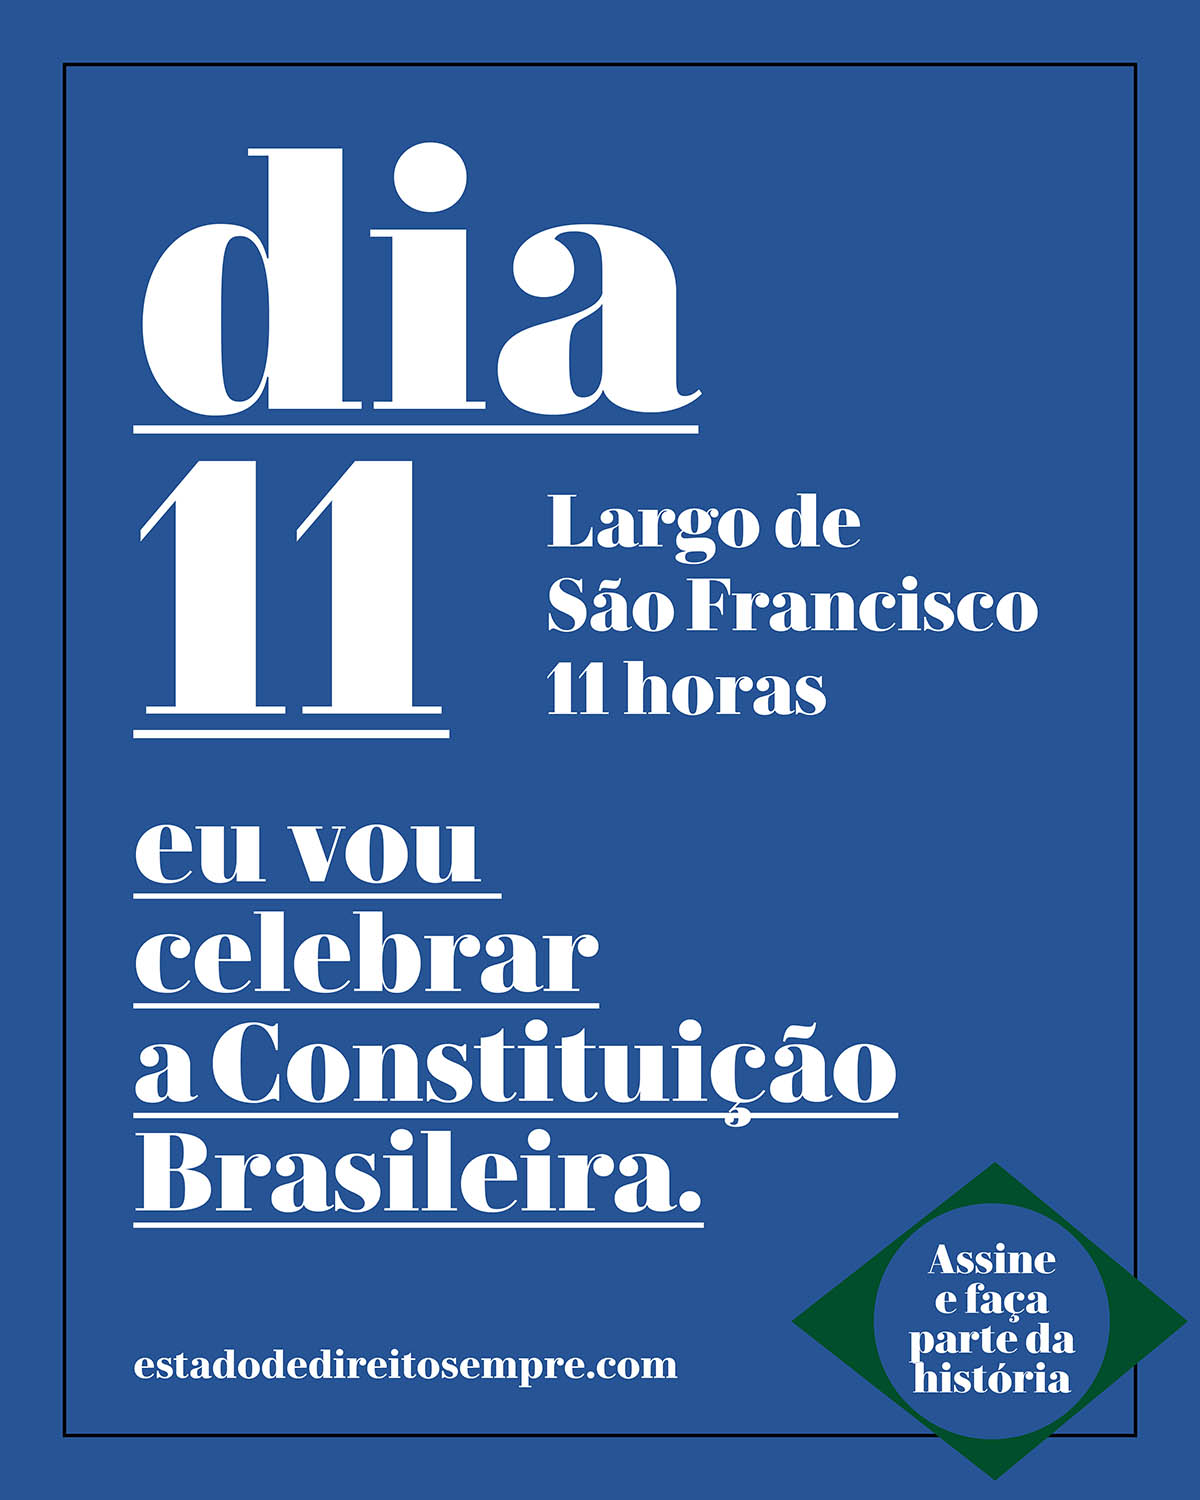 Largo de São Francisco. Dia 11. 11 horas. Eu vou celebrar a Constituição Brasileira.